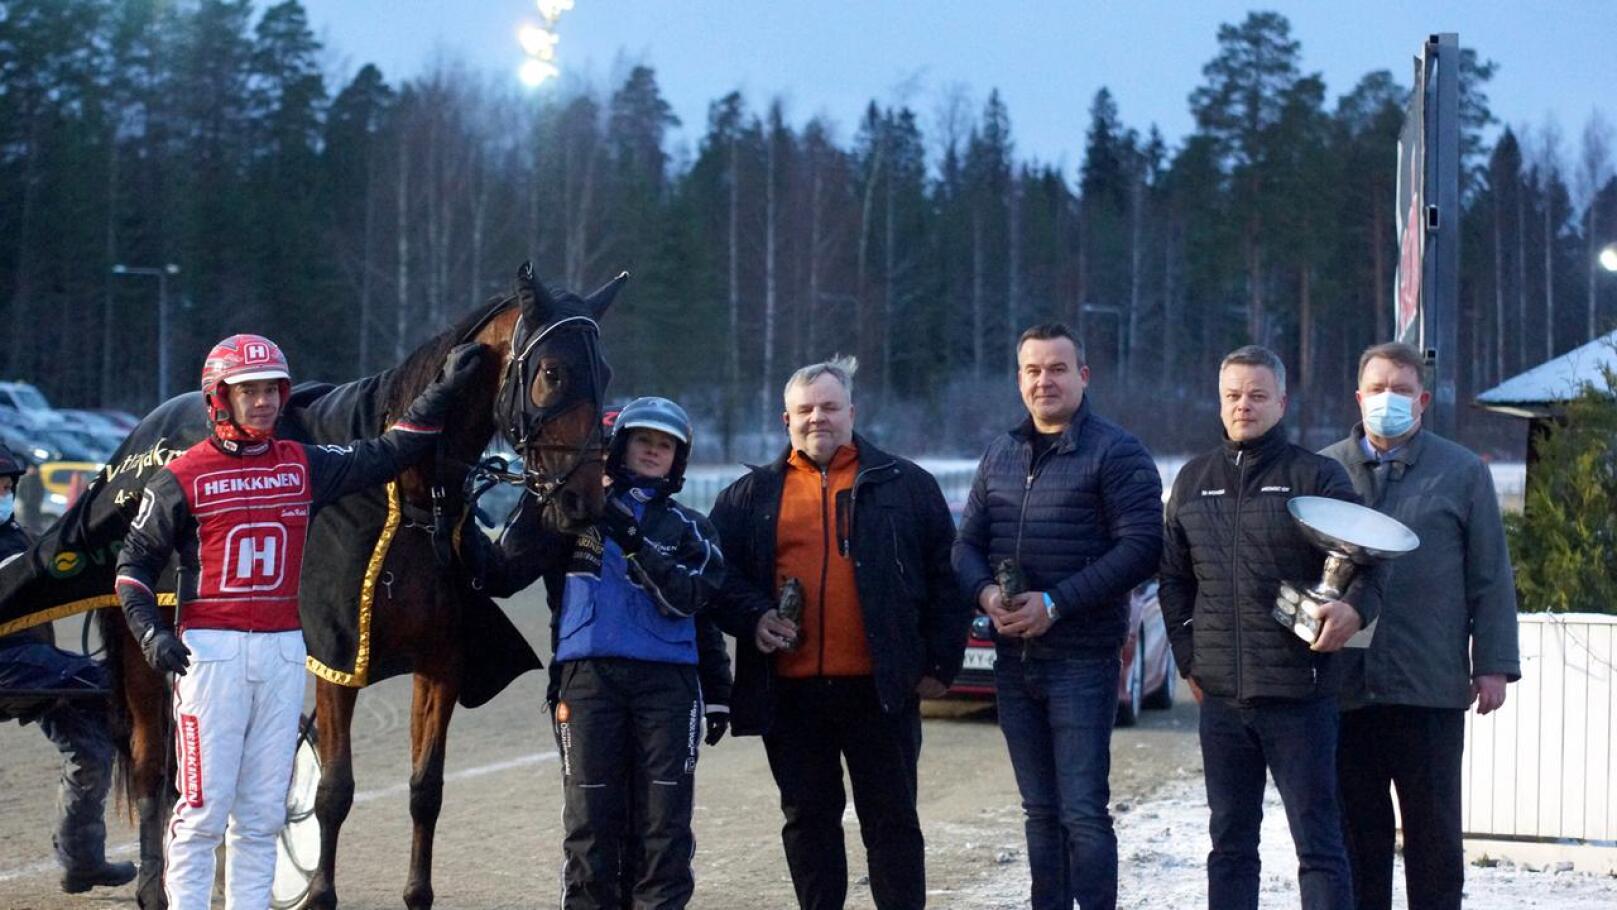 Moonlight Velvetin arvokasta voittoa olivat vuonna 2020 juhlimassa ohjastaja Santtu Raitala, valmentaja-osaomistaja Eija Sorvisto, kasvattaja Jorma Heinonen, omistajiin kuuluvat Janne Salmela ja Mika Pajukoski sekä kilpailun sponsoreihin kuuluva Heikki Kankainen.